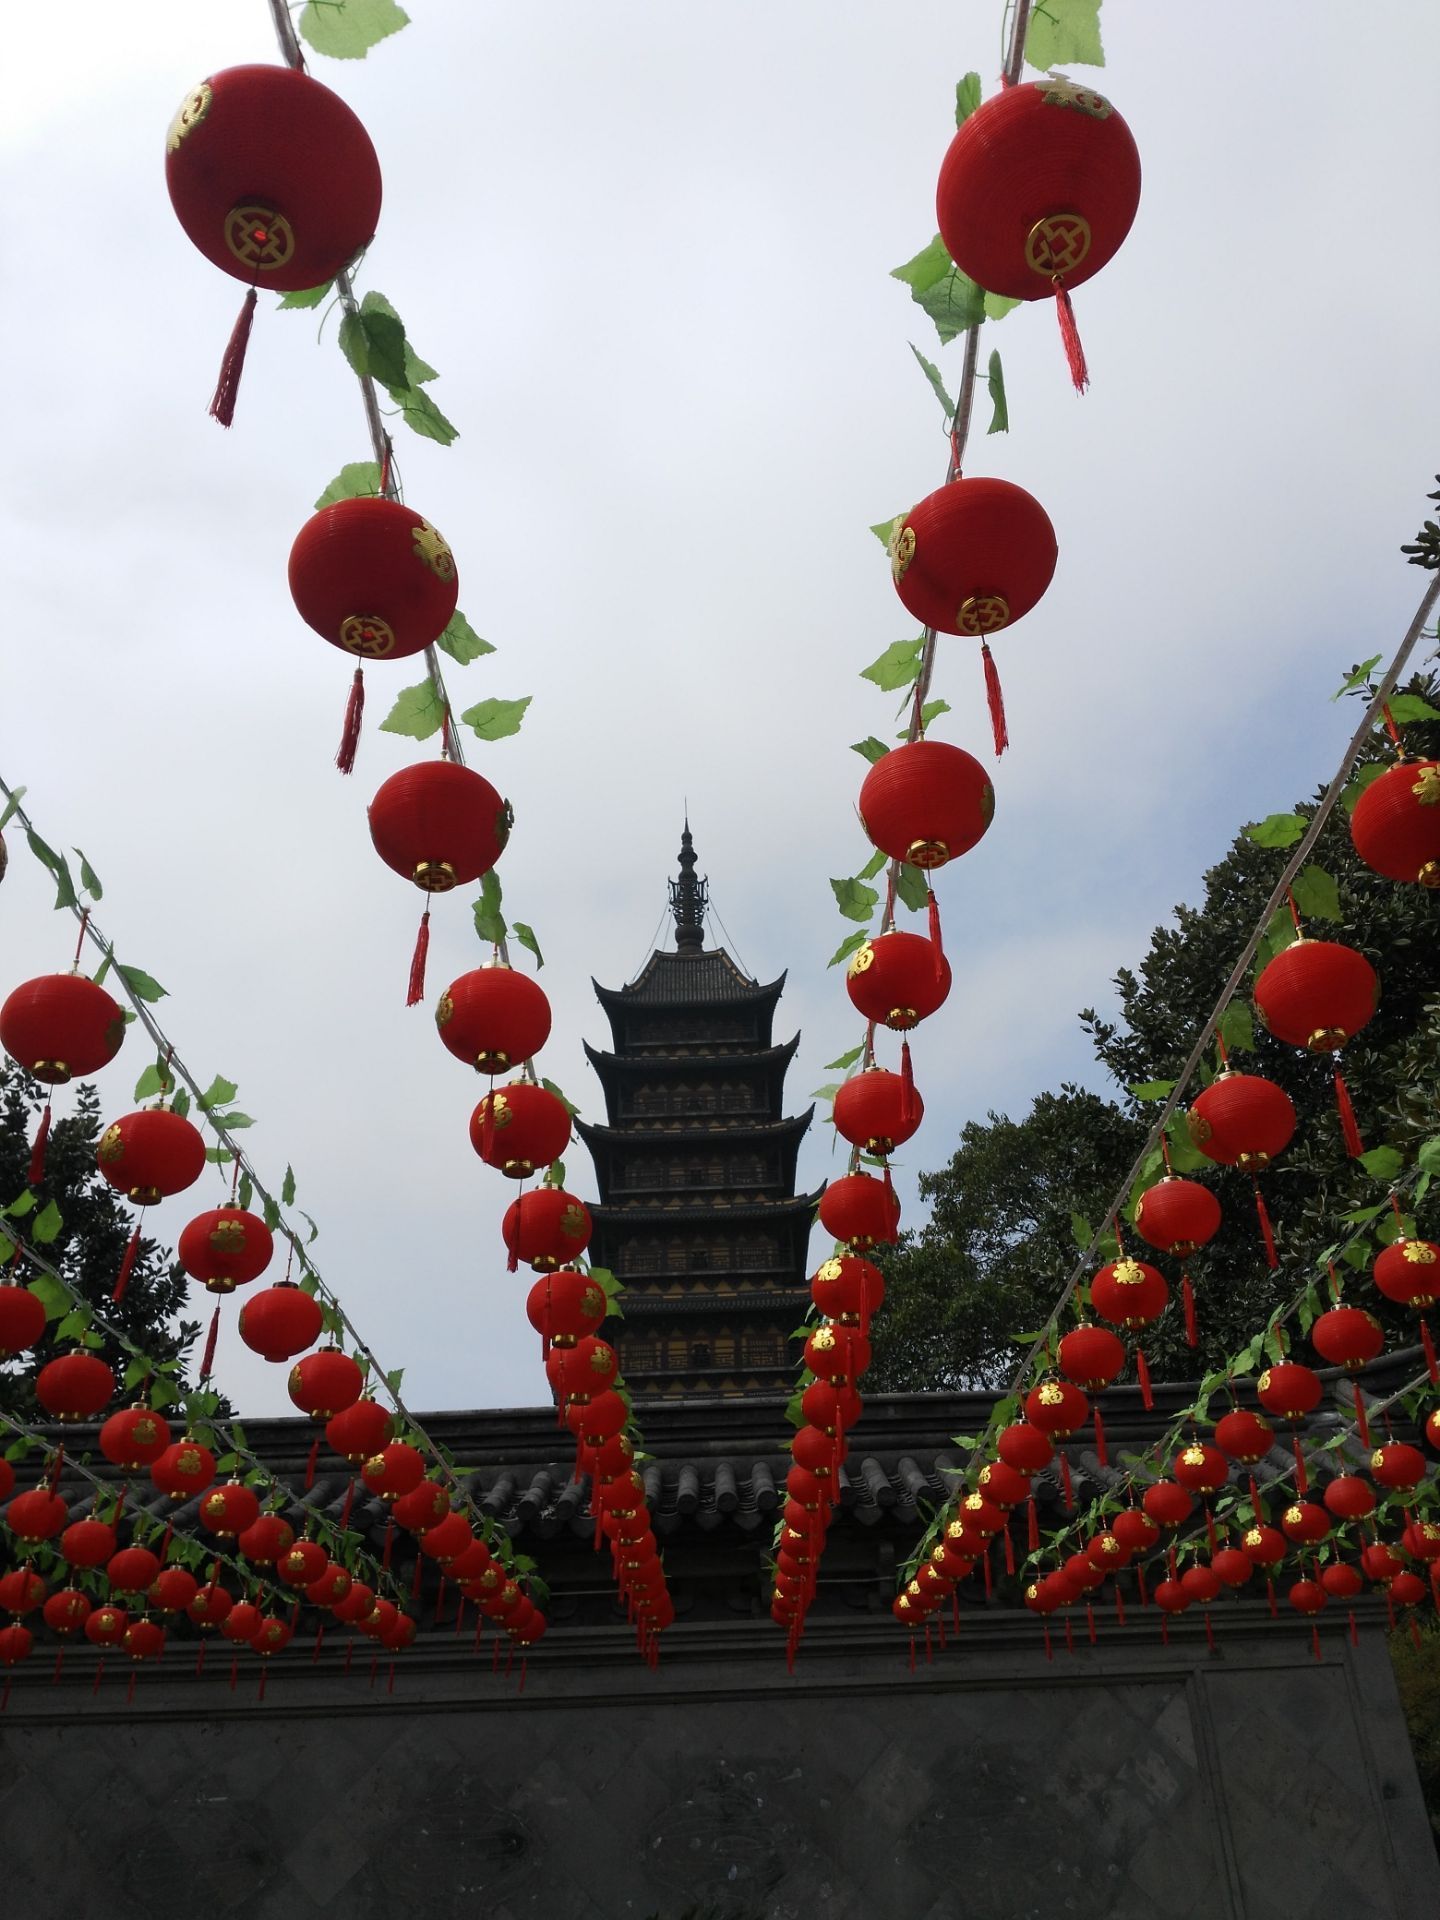 方塔园 -上海市文旅推广网-上海市文化和旅游局 提供专业文化和旅游及会展信息资讯